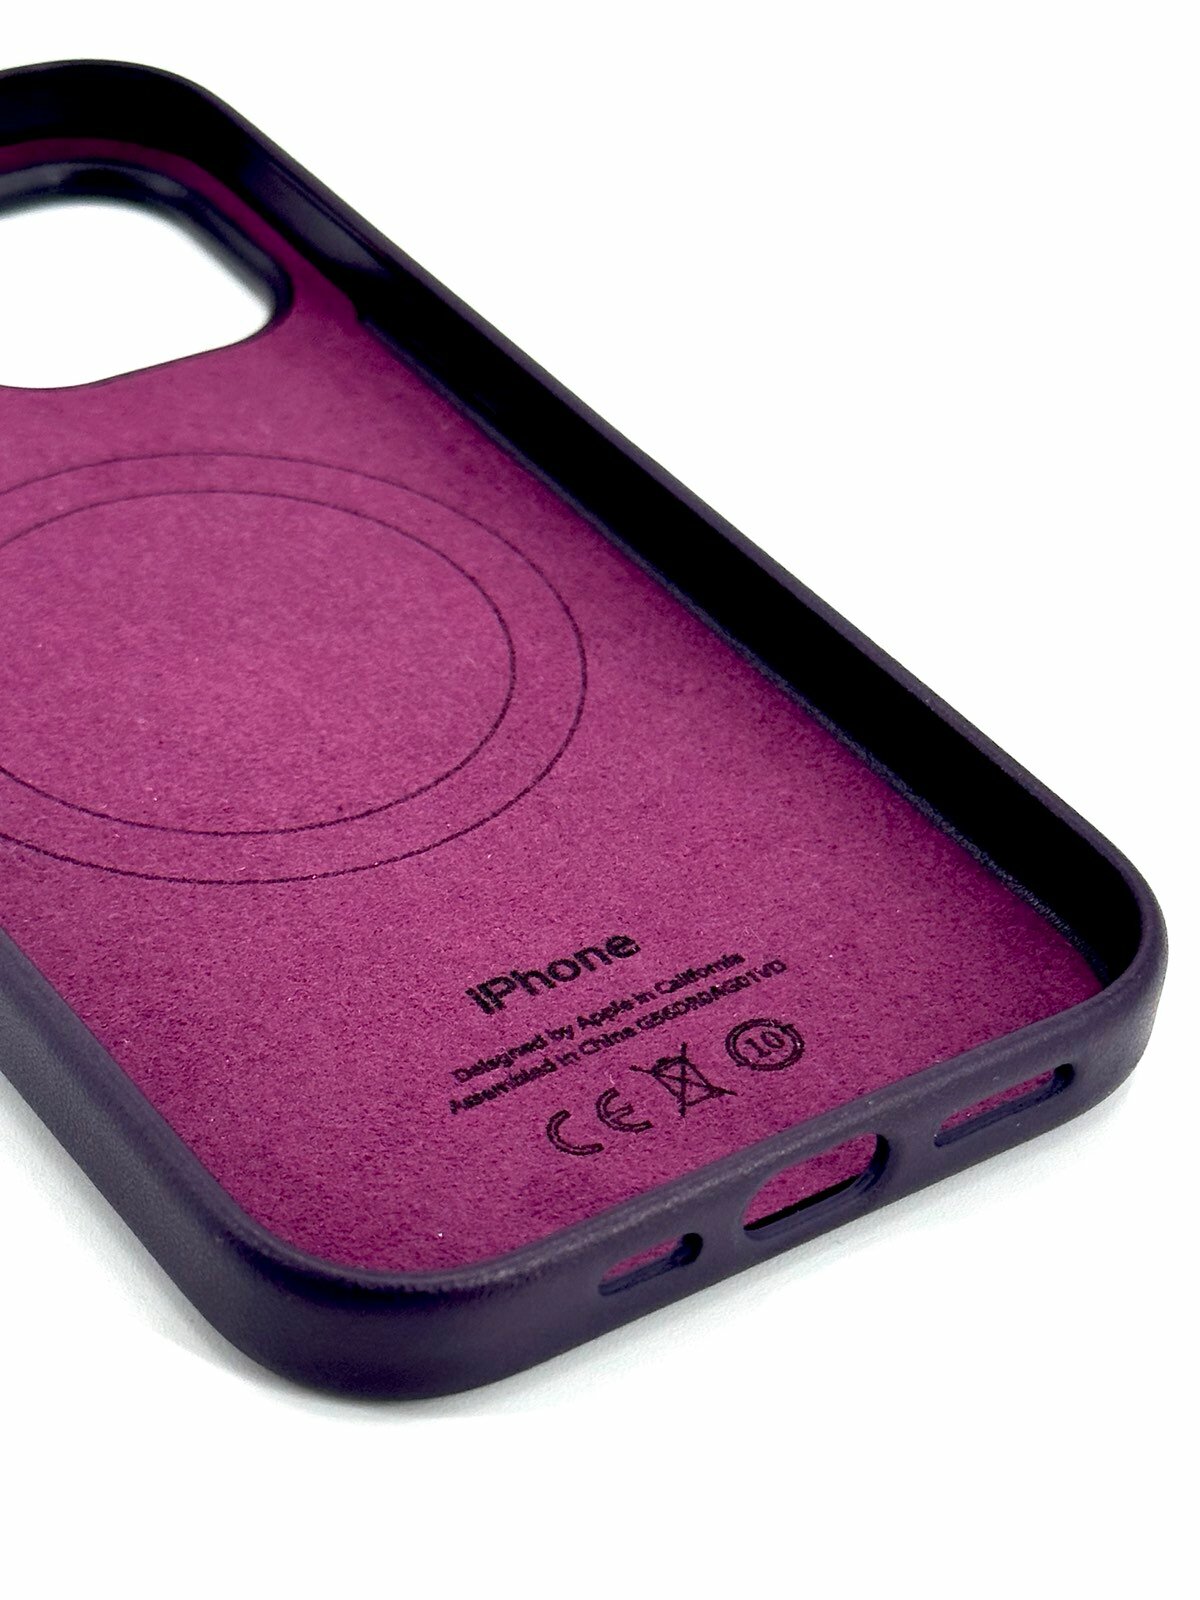 Кожаный чехол для iPhone 14 с Magsafe и анимацией бордовый (Elderberry)